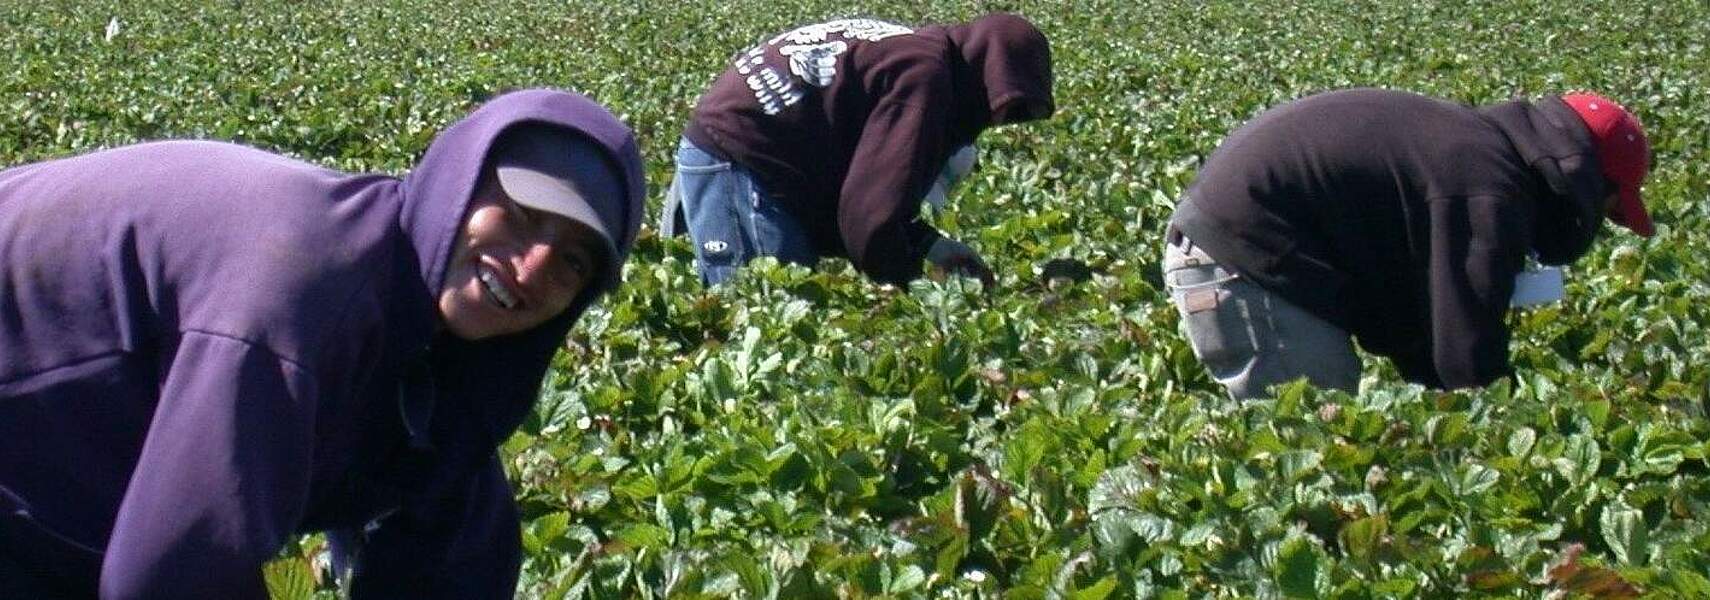 Saisonarbeiter: Verbände appellieren an Landwirte